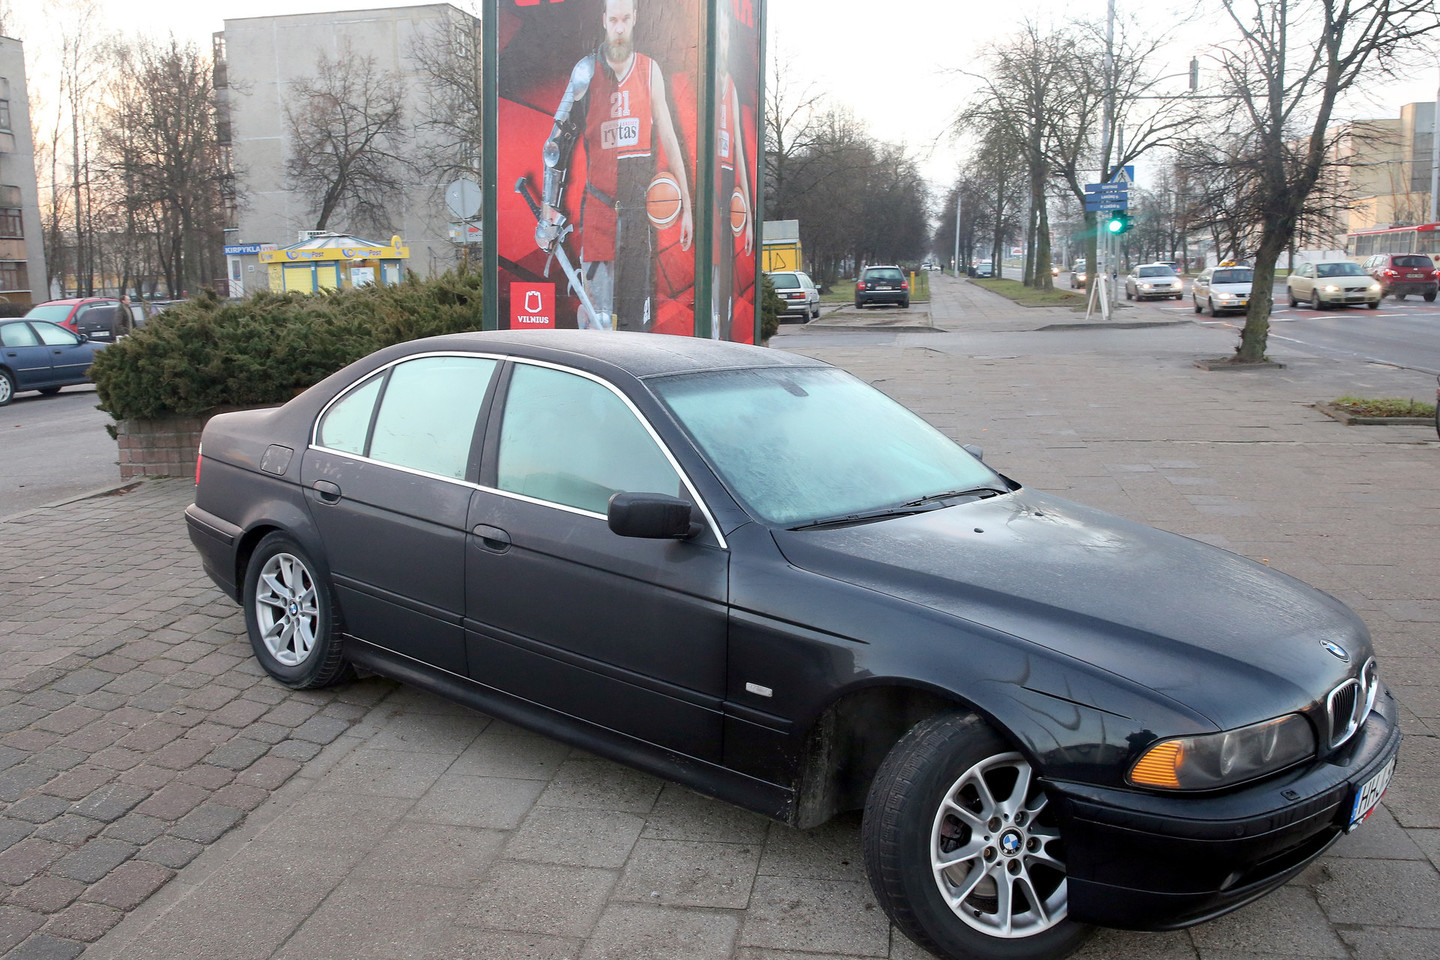 BMW trenkėsi į reklaminį stendą, mašinos savininkas kalba apie vagystę.<br>R.Danisevičiaus nuotr.